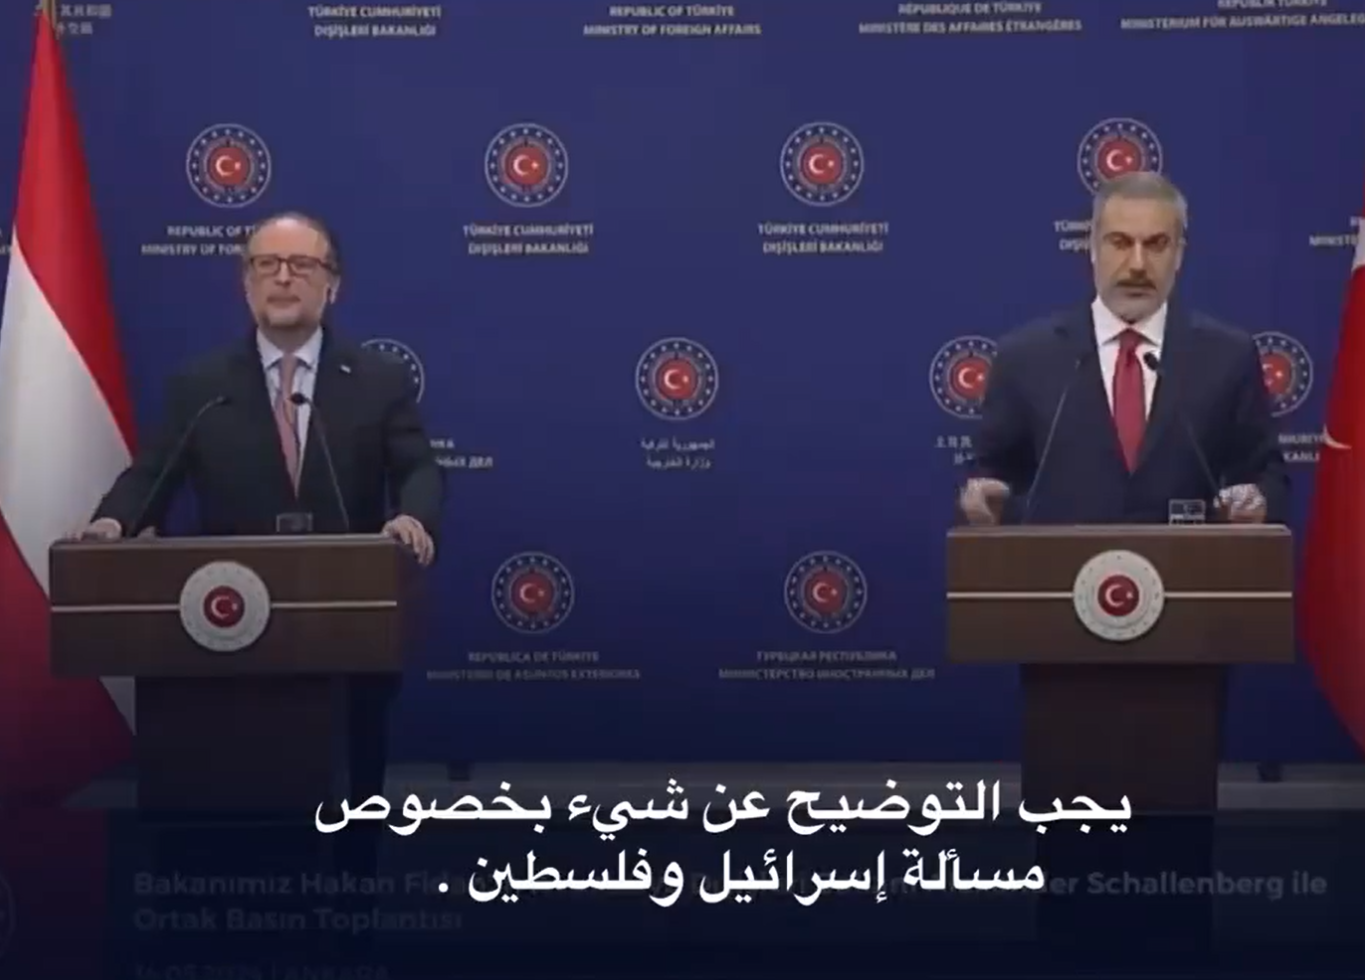 هاكان فيدان يُحرج وزير خارجية النمسا على الهواء بعد حديثه عن حماس